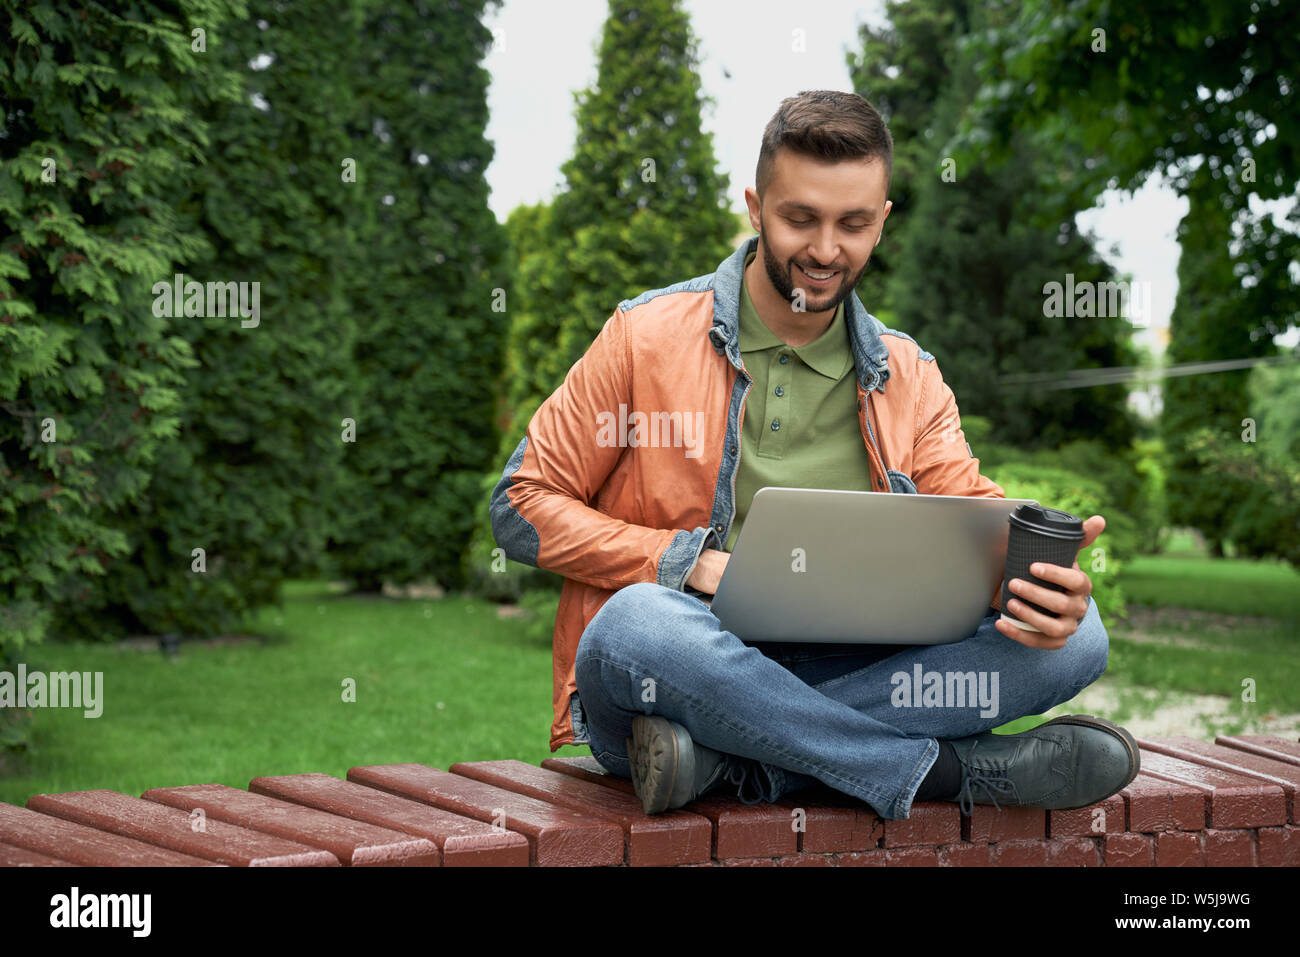 Где можно поработать с ноутбуком в москве. Ноутбук на даче. Студент с ноутбуком в зеленой одежде. Девушка с ноутбуком на природе. Человек с ноутом под деревом.